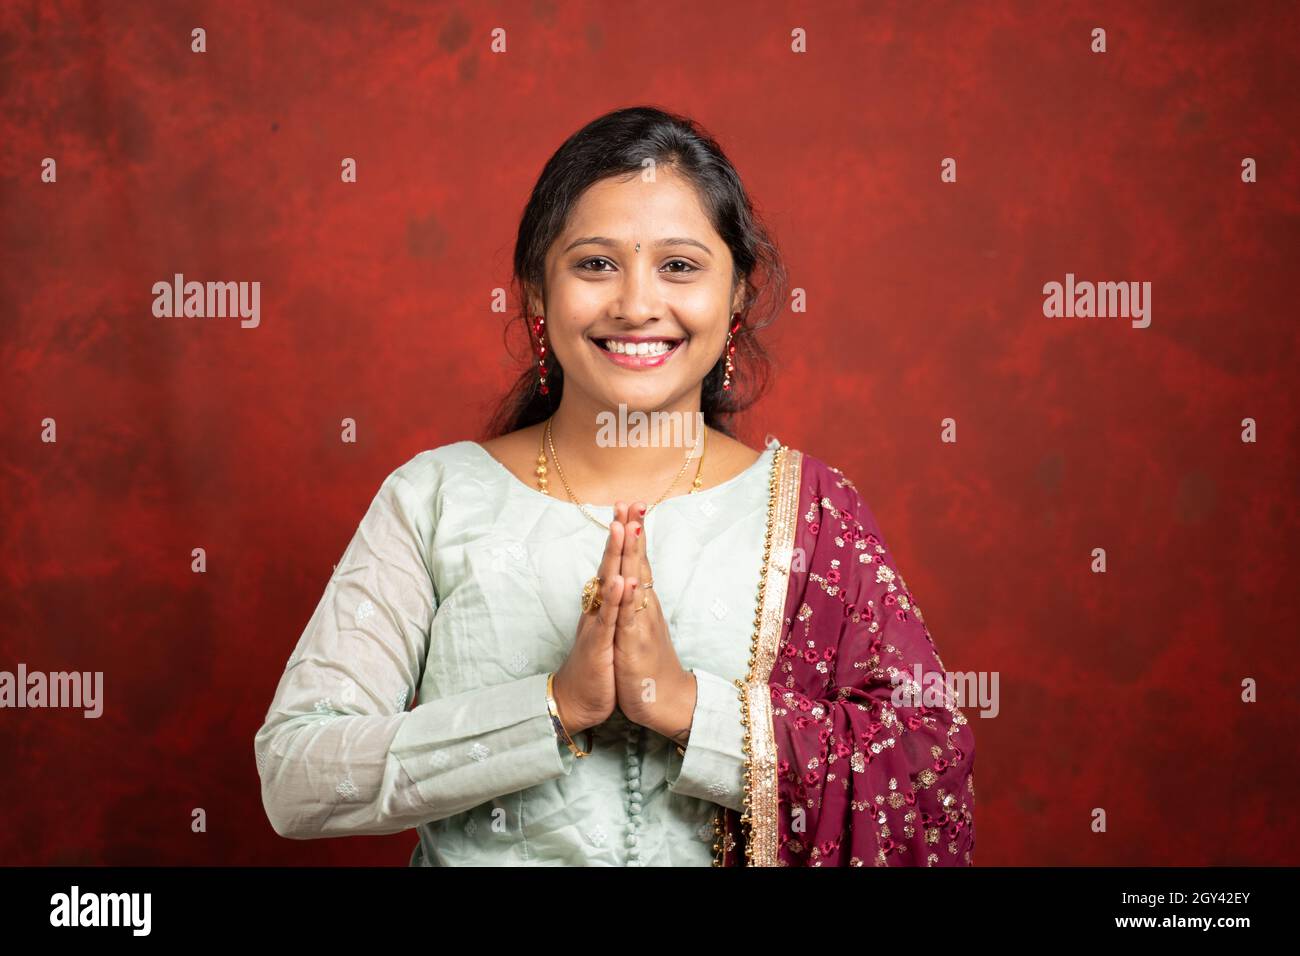 Glücklich lächelndes indisches Mädchen mit traditionellen ethnischen Kleid in namaste Geste Blick auf Kamera - Konzept der indischen Art der Begrüßung Stockfoto